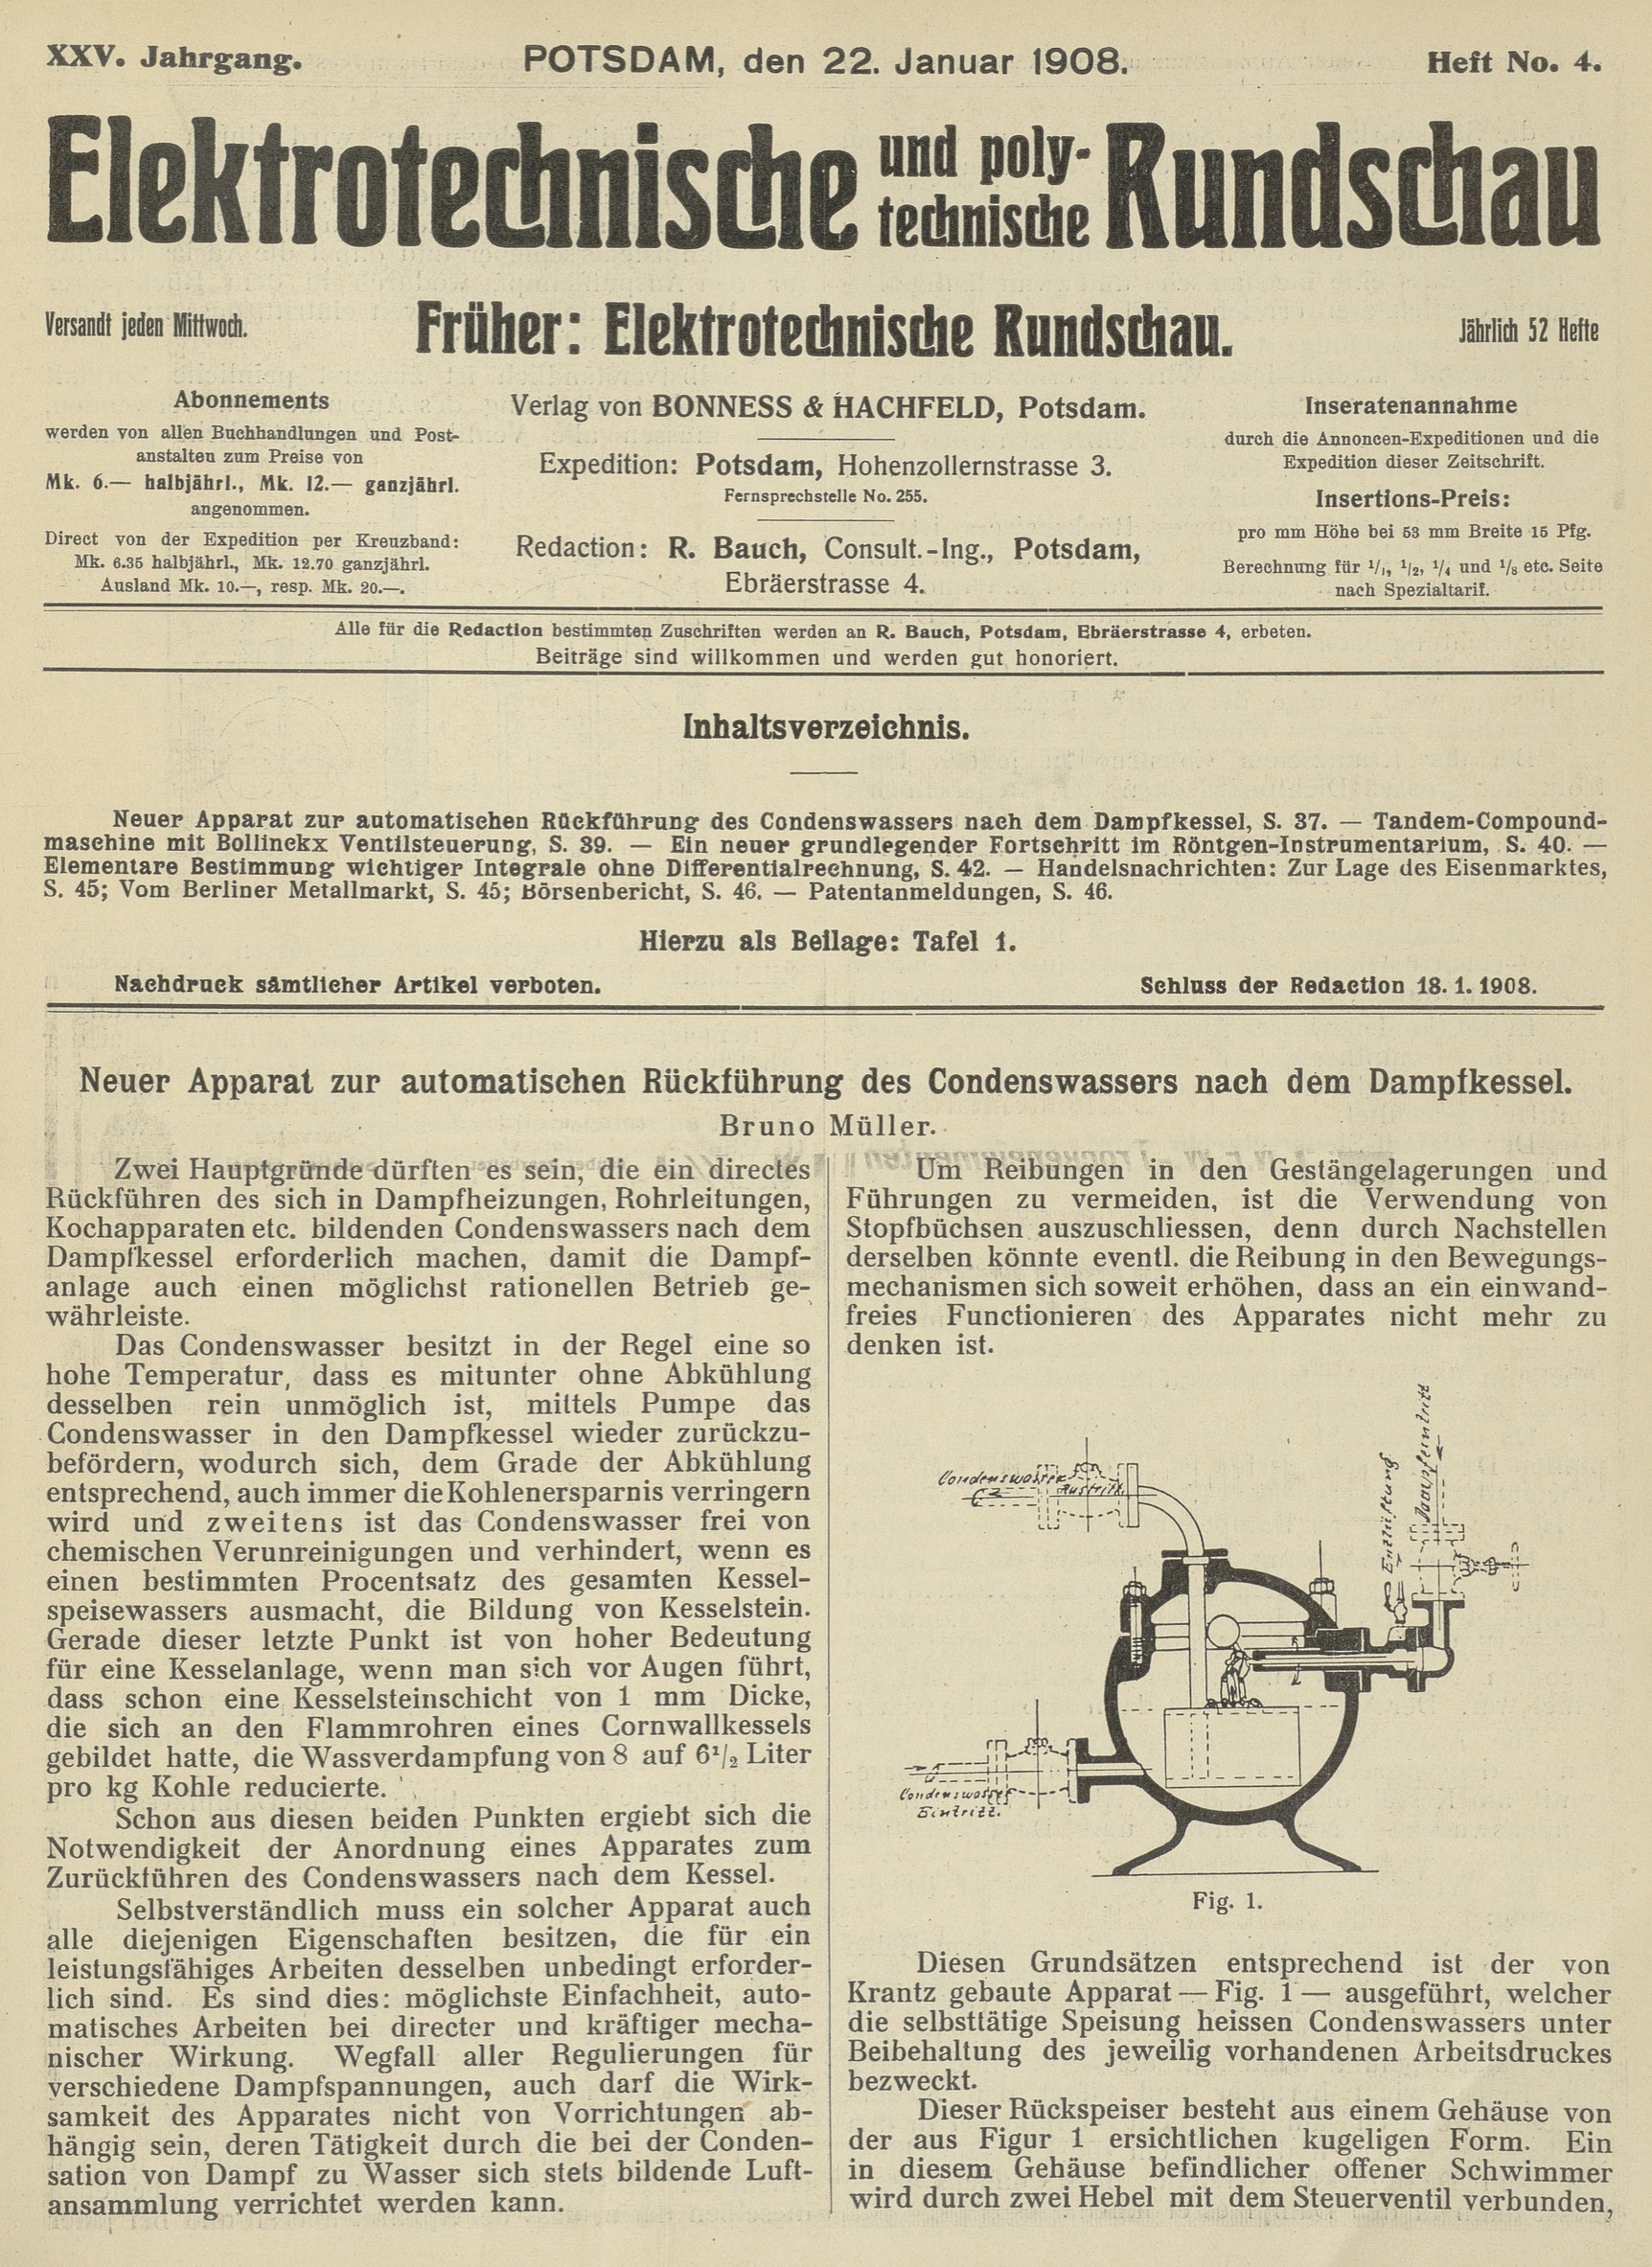 Elektrotechnische und polytechnische Rundschau, XXV. Jahrgang, Heft No. 4